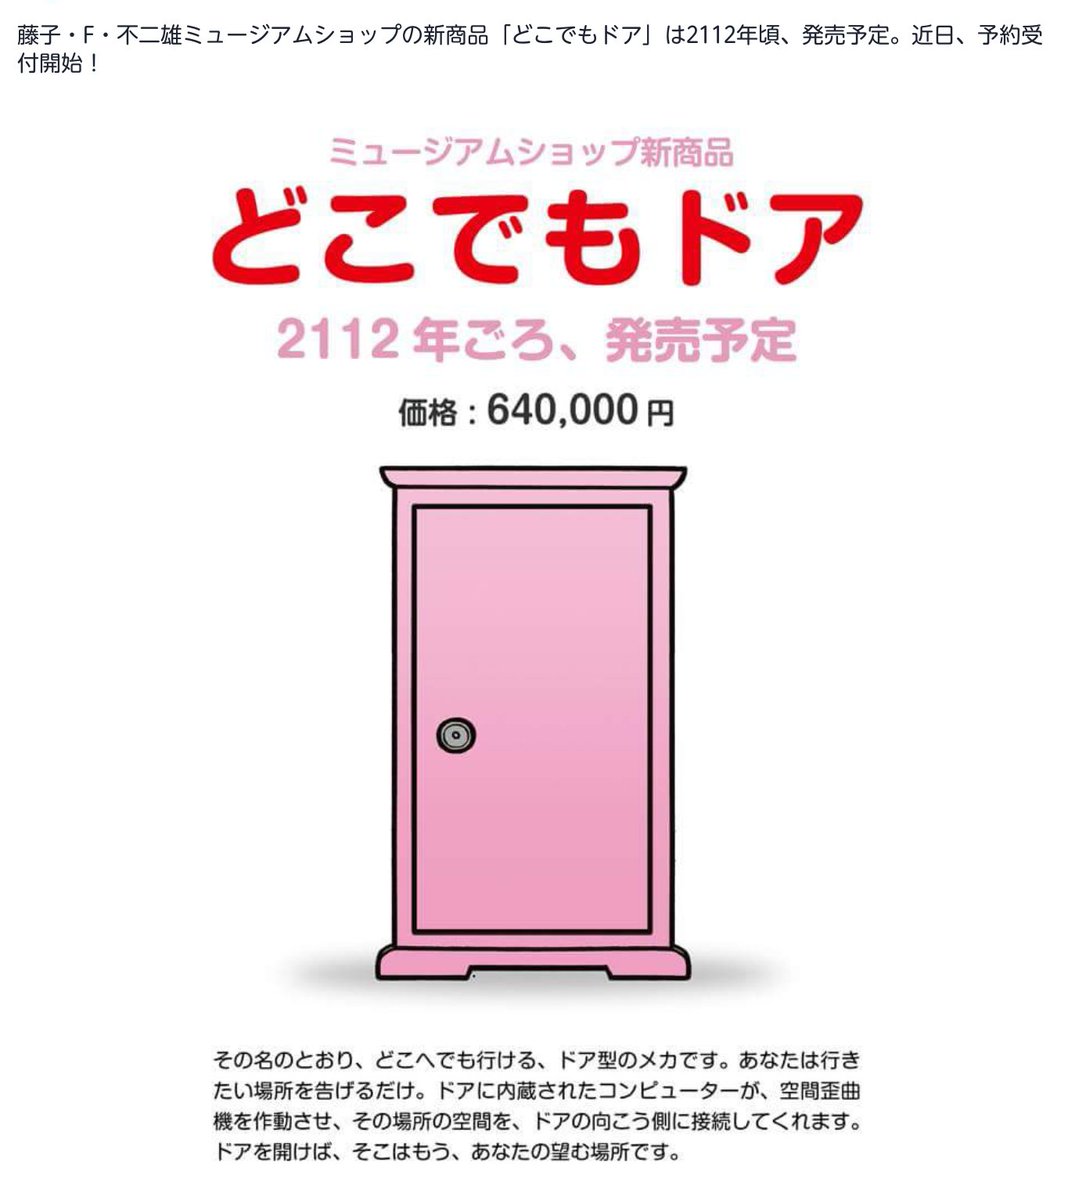 どこでもドアがお値段なんと64万円 予約受付開始か ネタ Naver まとめ